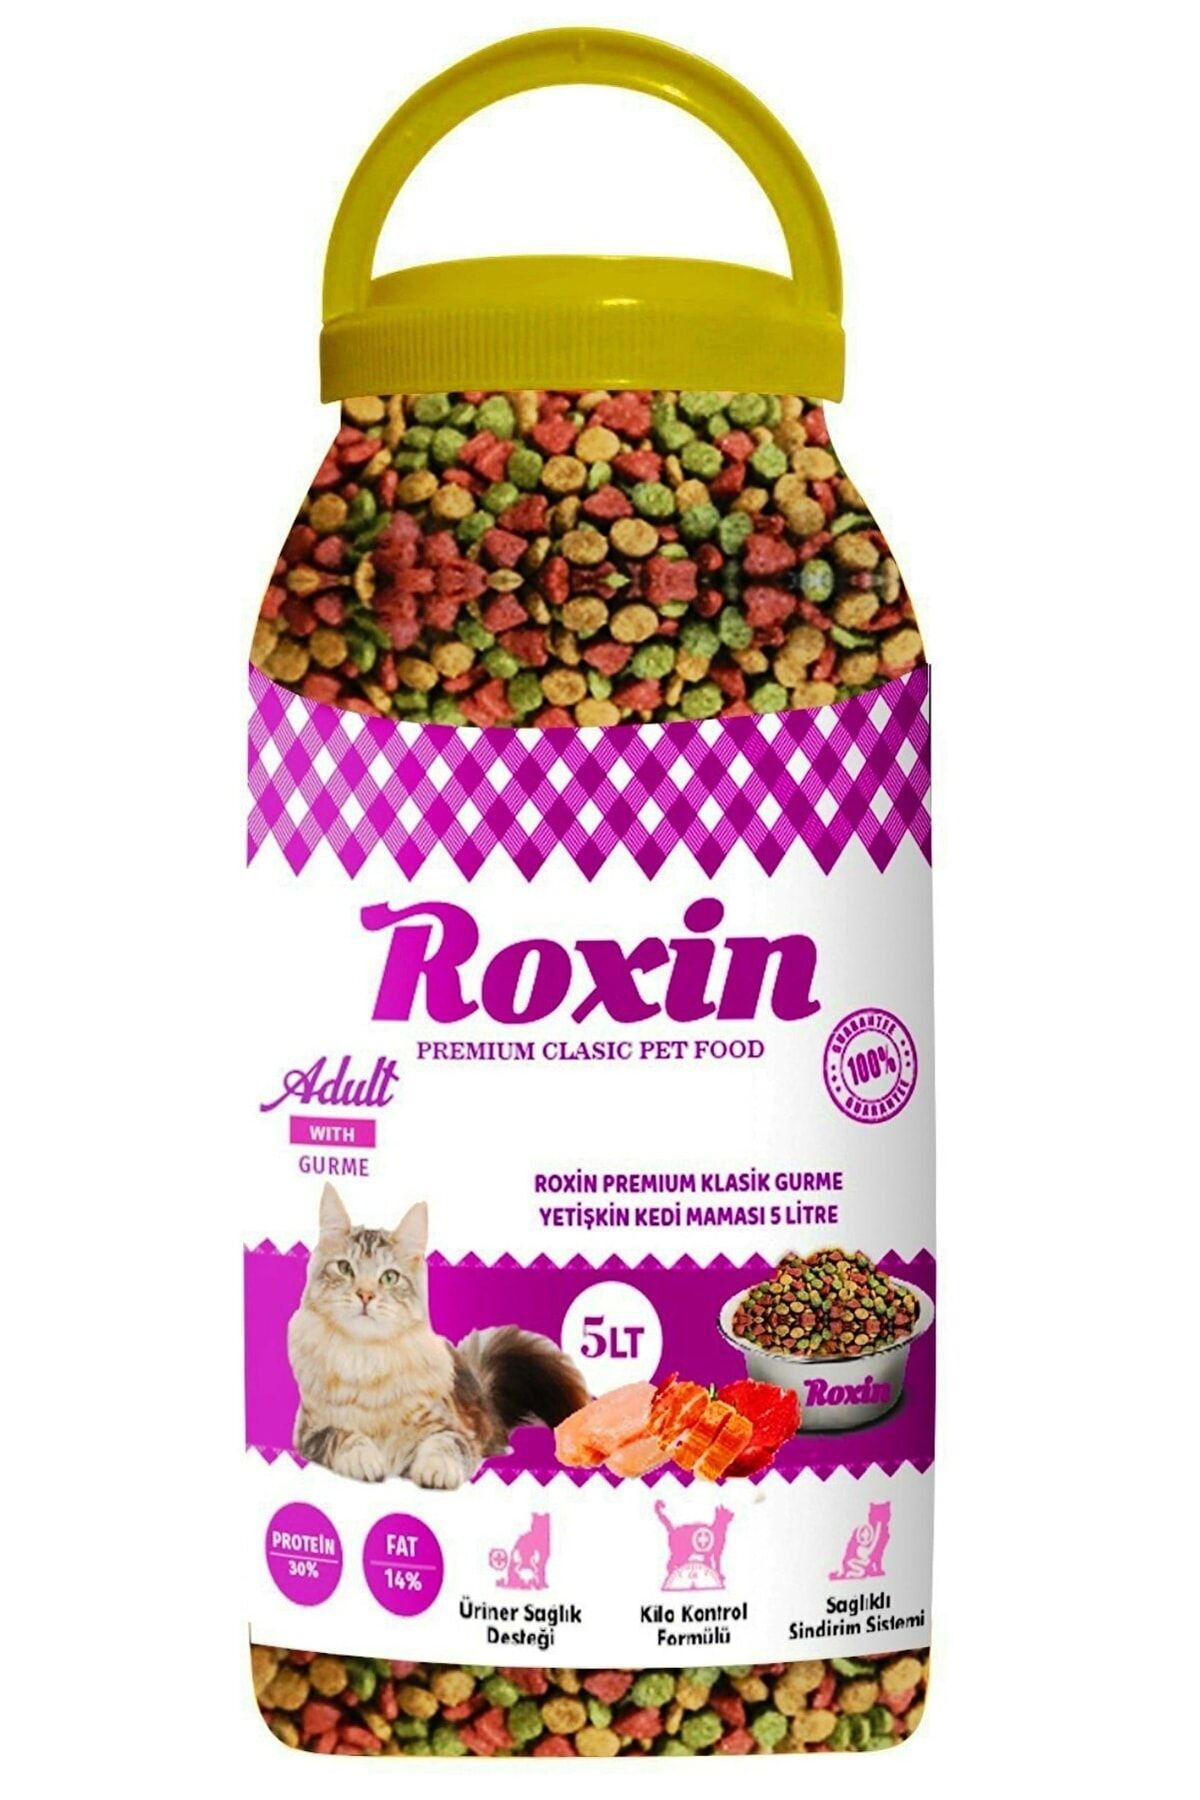 Roxin Premıum Klasik Gurme Yetişkin Kedi Maması 5 Lt